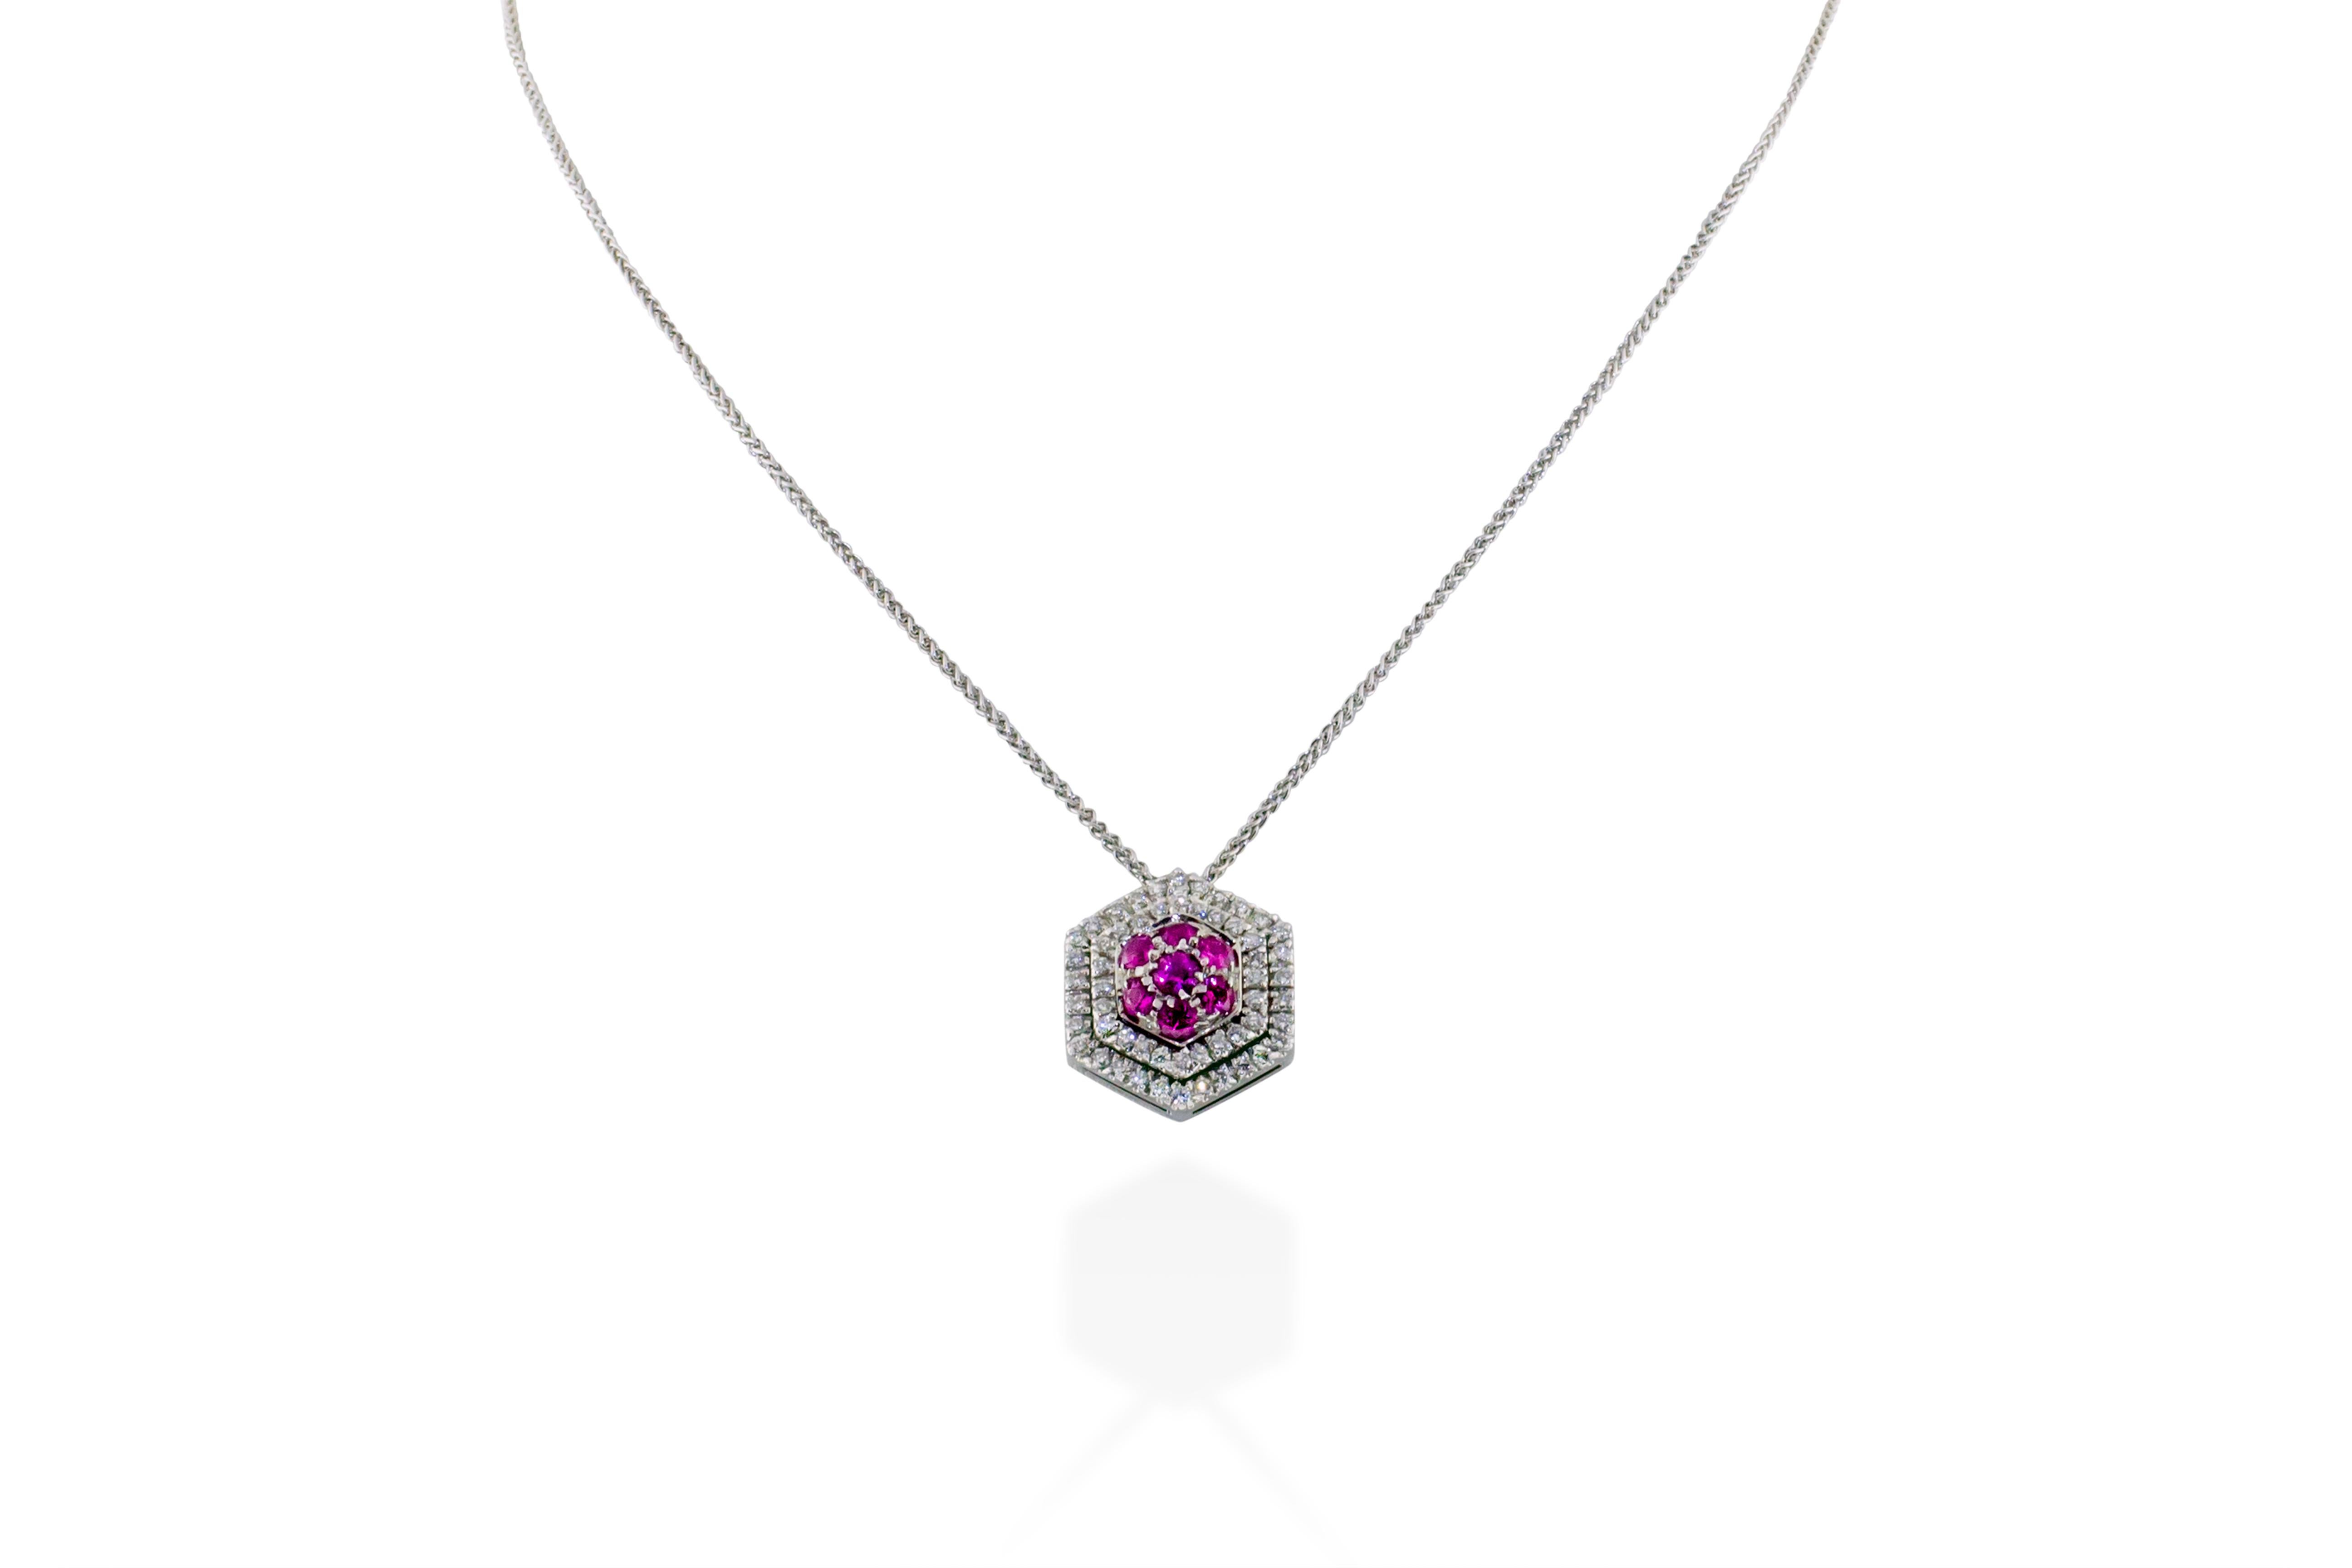 Ce collier comporte un pendentif contenant 1 carat de diamants G-H VS sertis de saphirs roses dans 5 grammes d'or 18K. La chute de la chaîne est d'environ 8 pouces. Fabriquées en Italie. 


Visites disponibles dans notre salle d'exposition à New